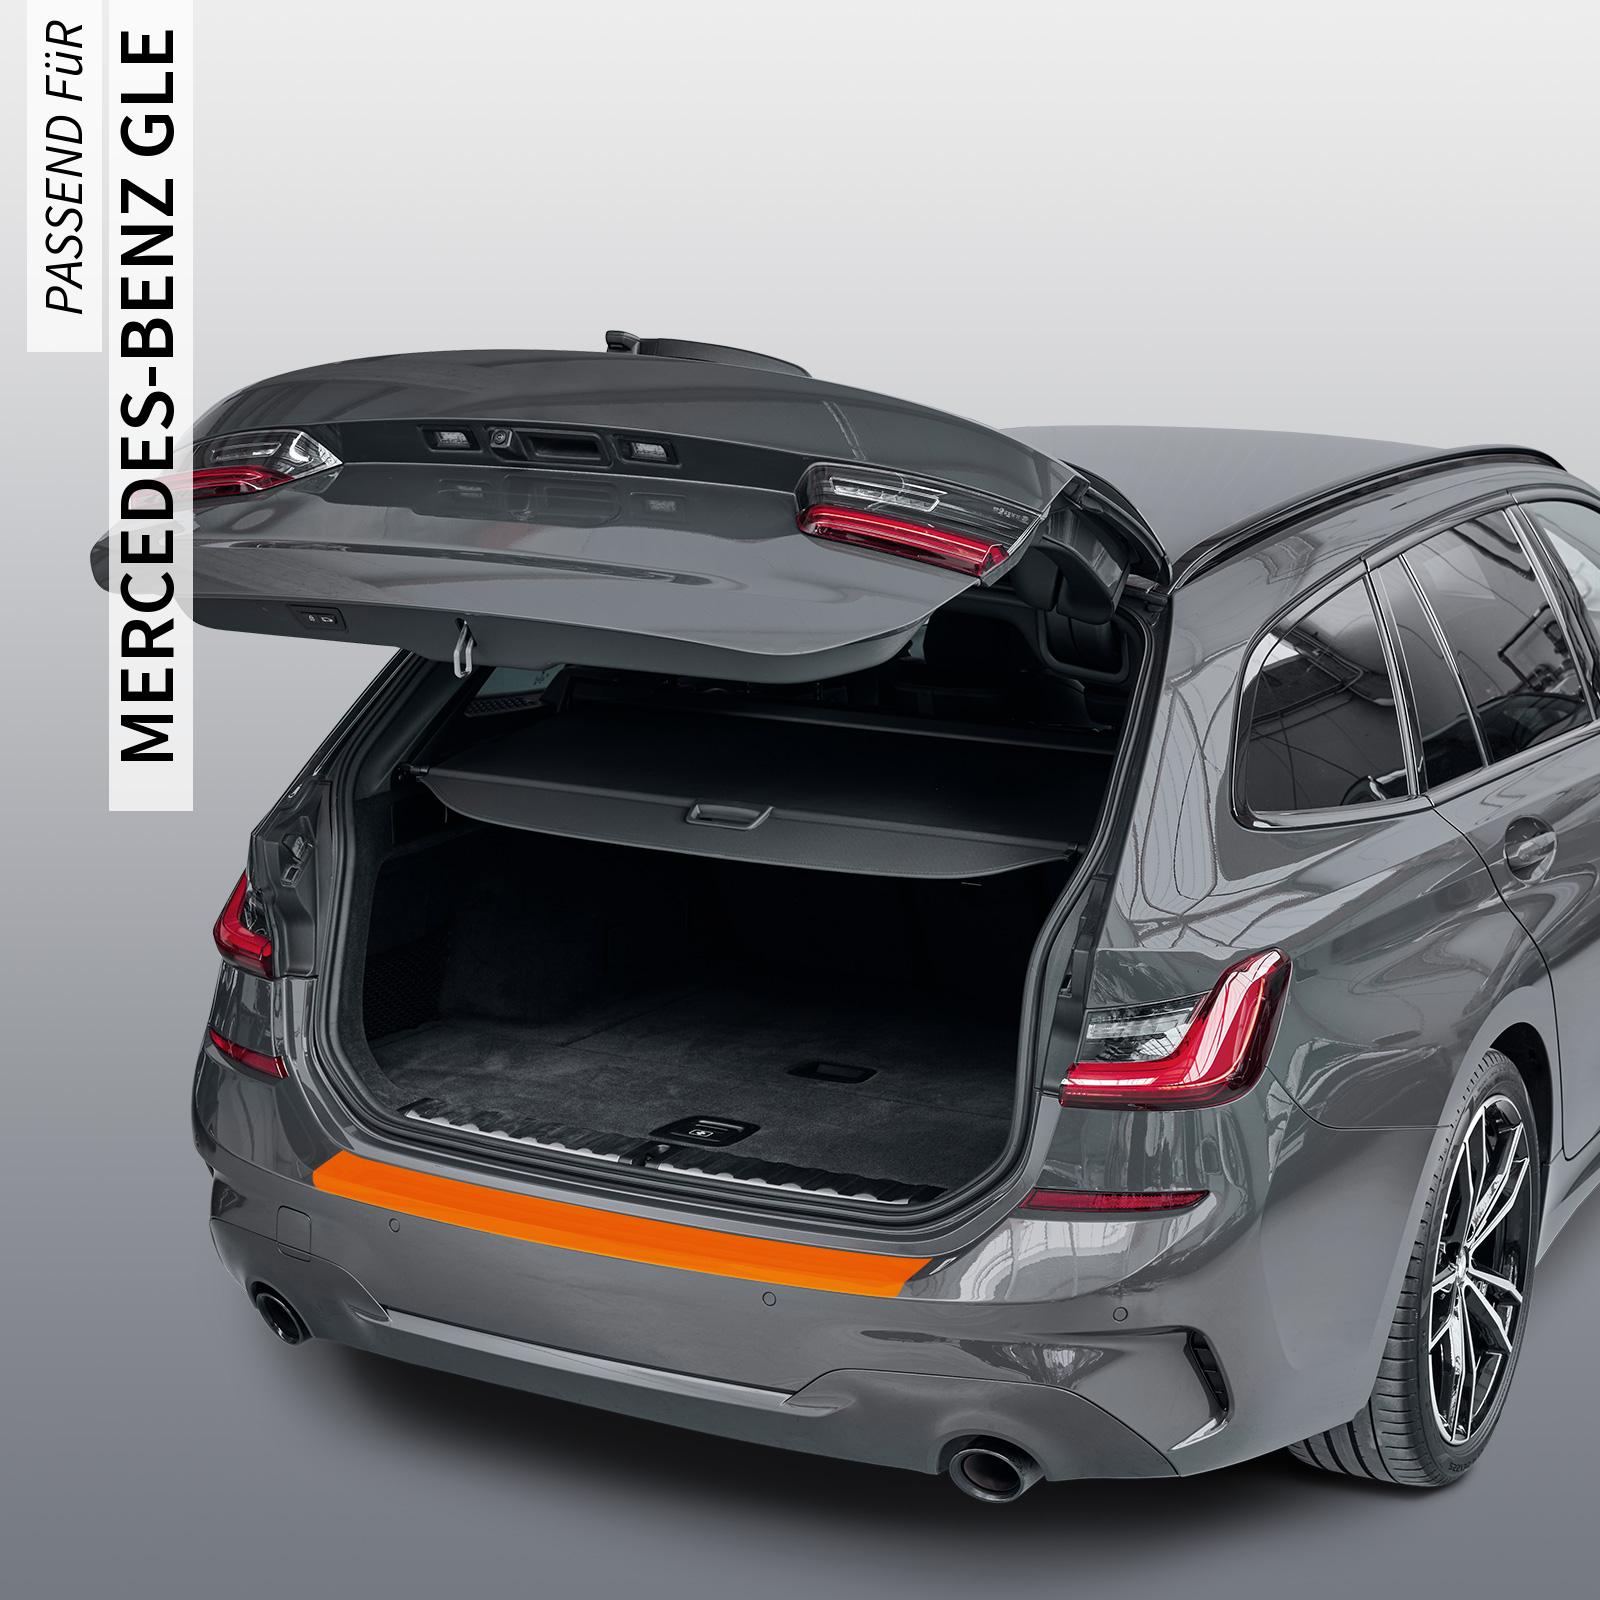 Ladekantenschutzfolie - Transparent Glatt MATT 110 µm stark  für Mercedes-Benz GLE Typ V167, ab BJ 2019